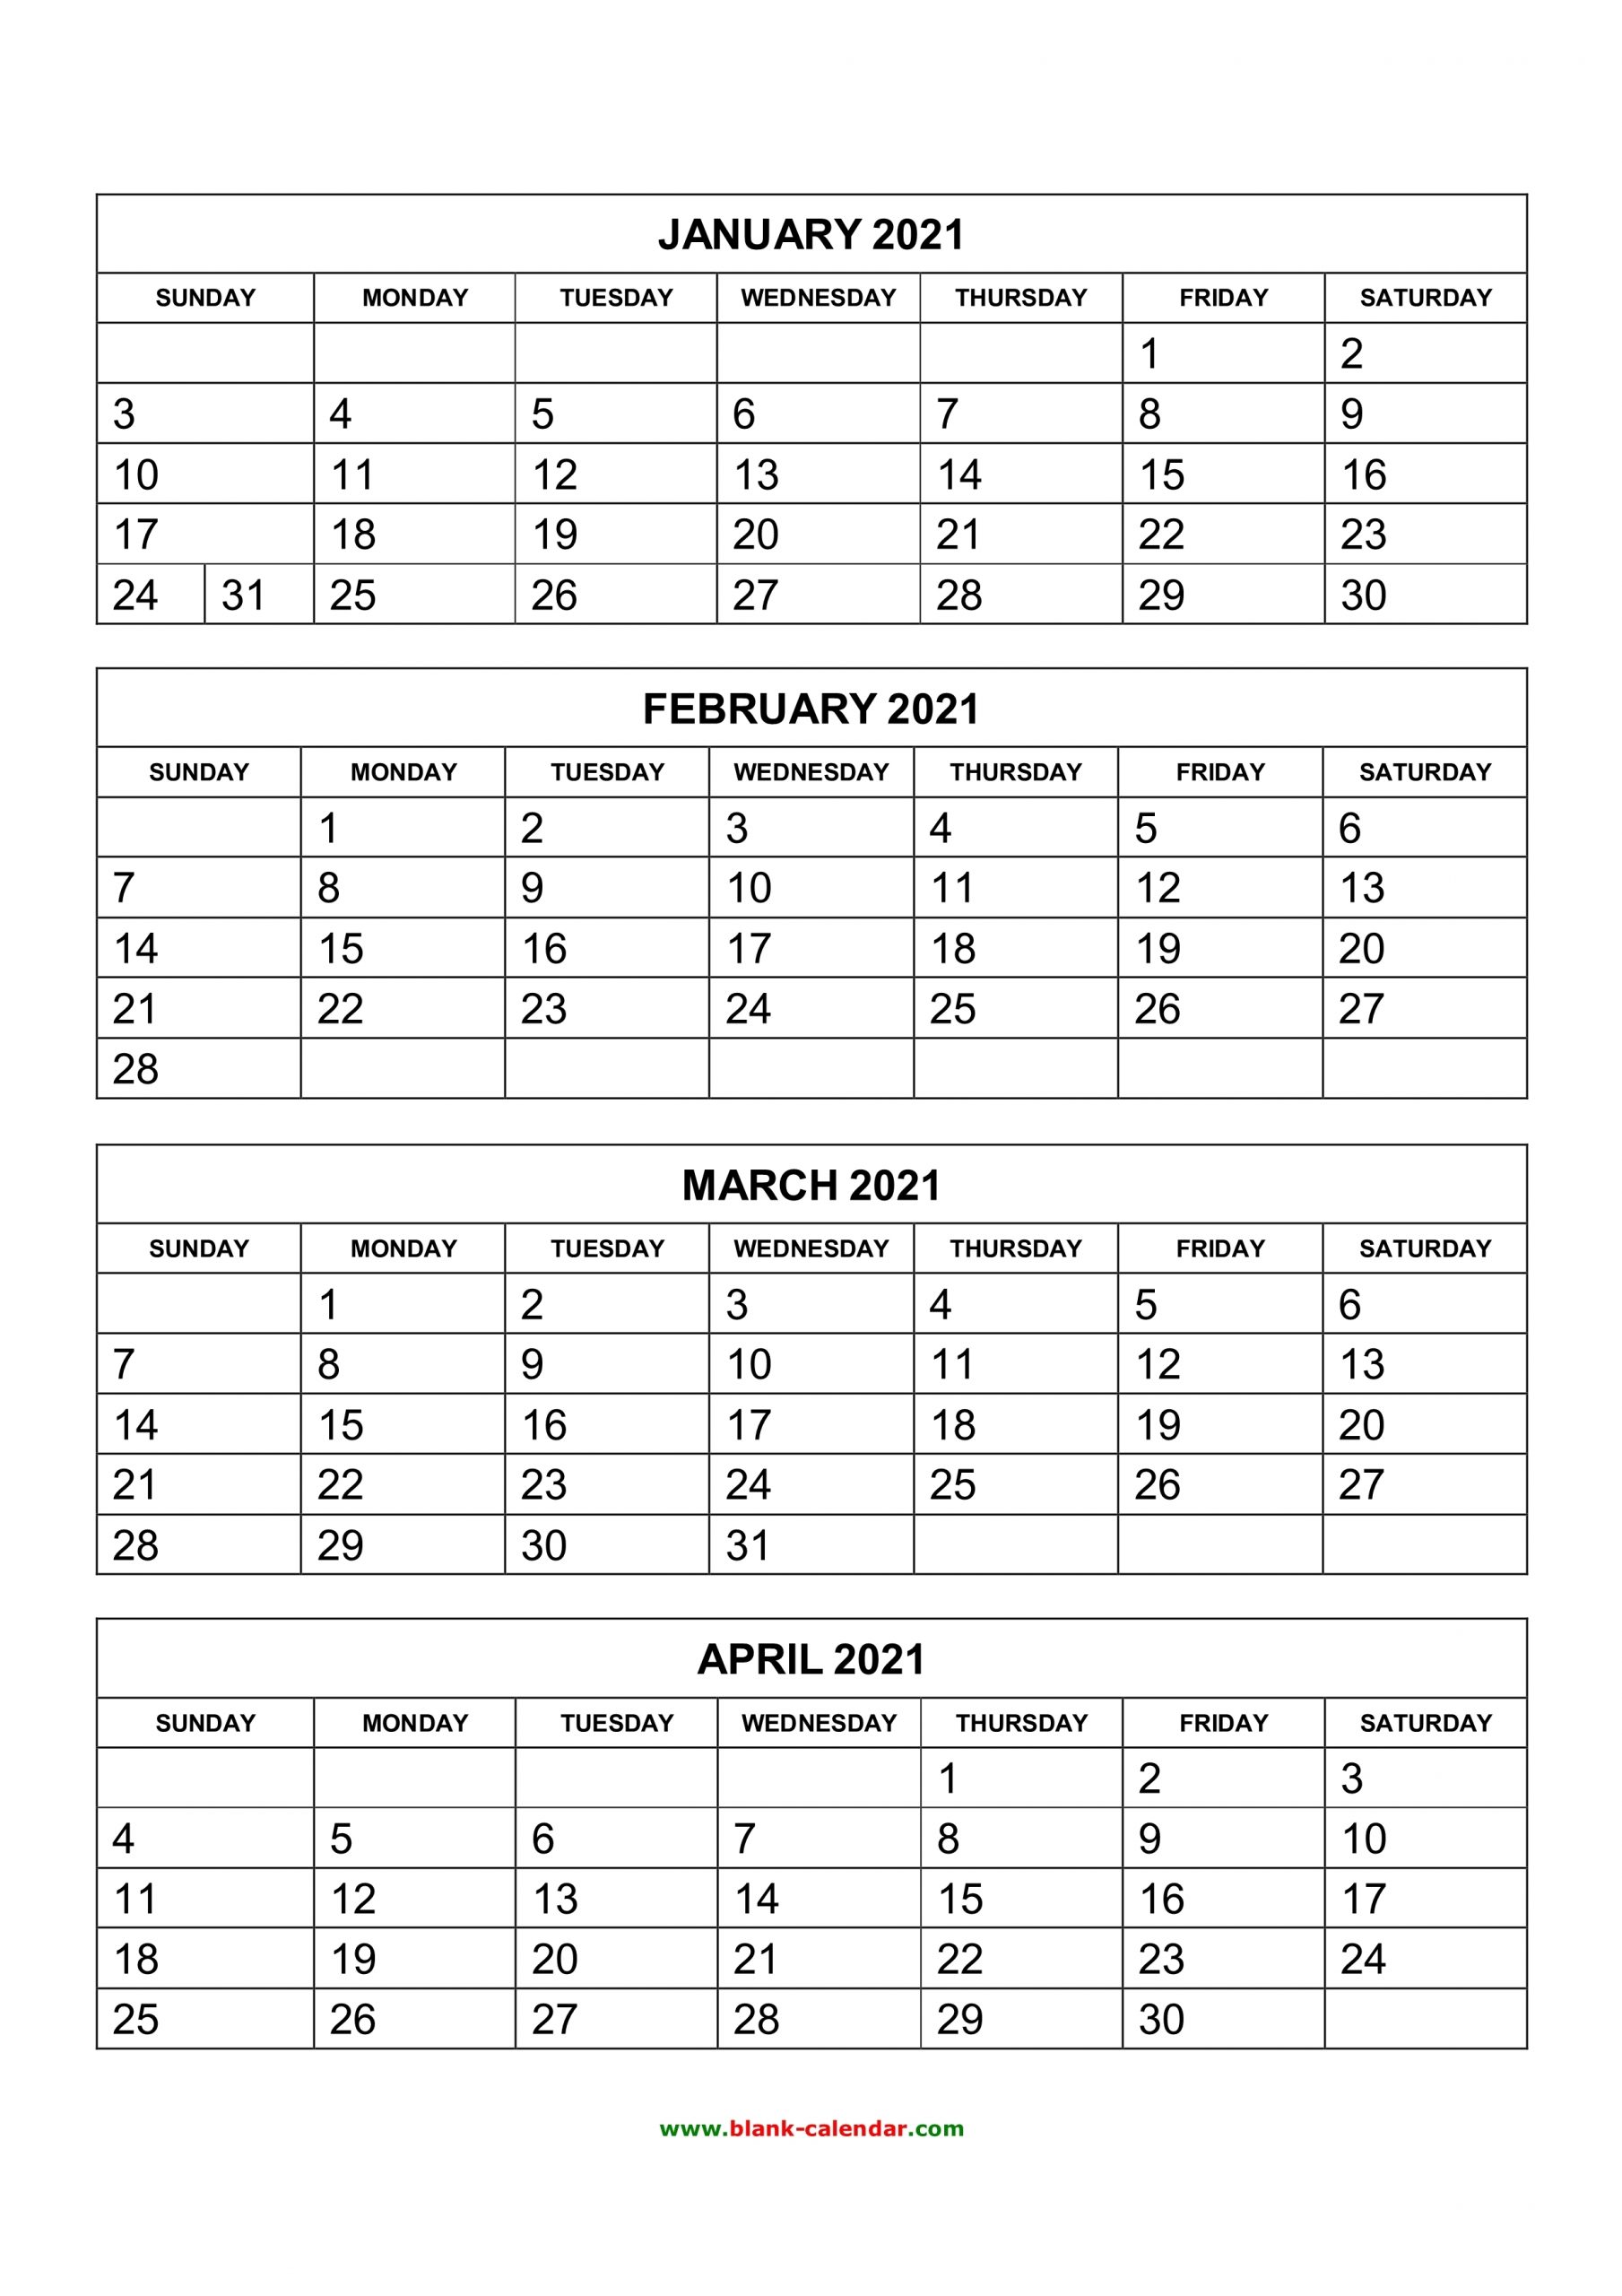 Get Four Month Calendar Template Word